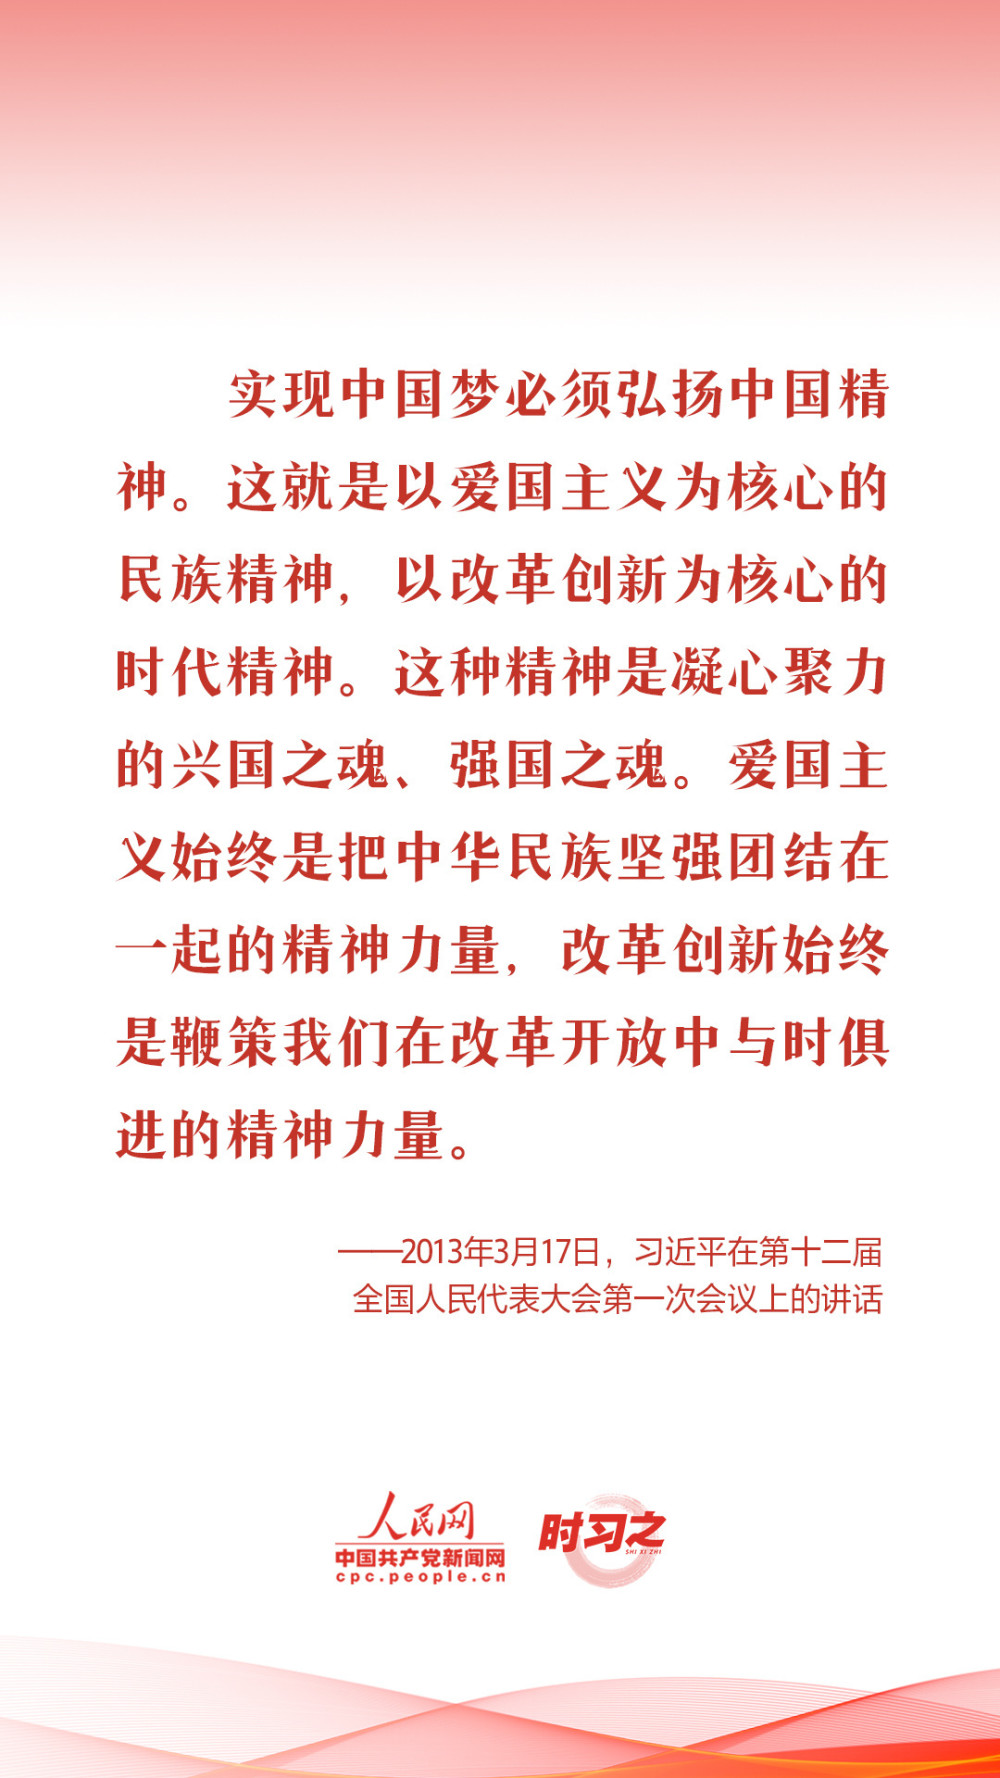 北京11月27日0-15时新增本土感染者1781例猪肉锅贴的做法窍门